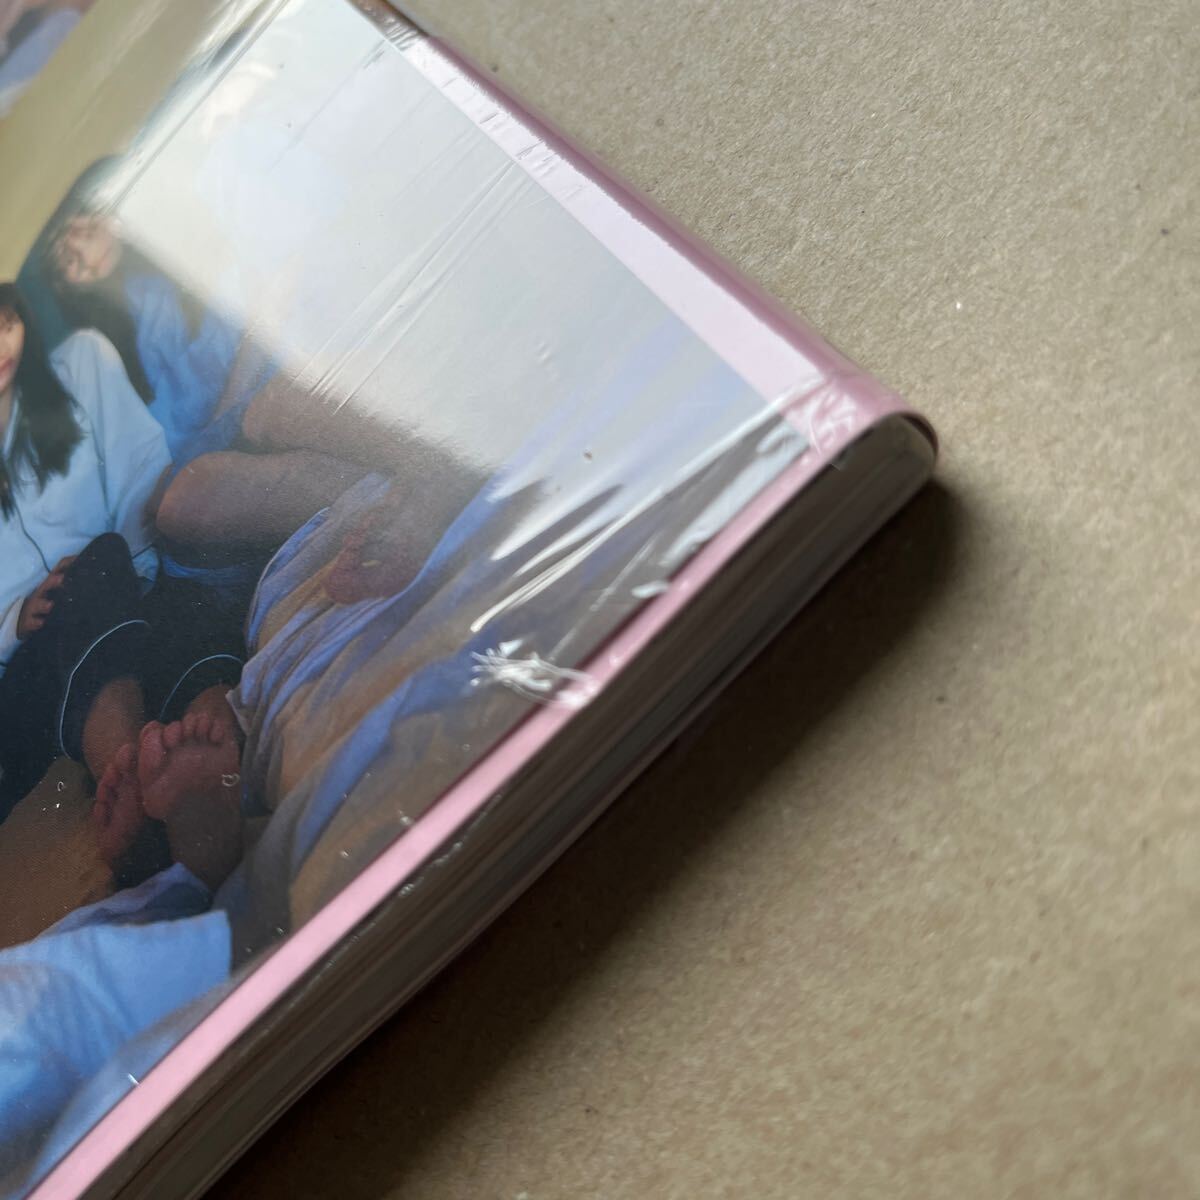 乃木坂46 5期生 写真集「あの頃、乃木坂にいた」 通常盤 封入ポスター、応募券なし 書店特典ポストカードあり 未読品 _画像5